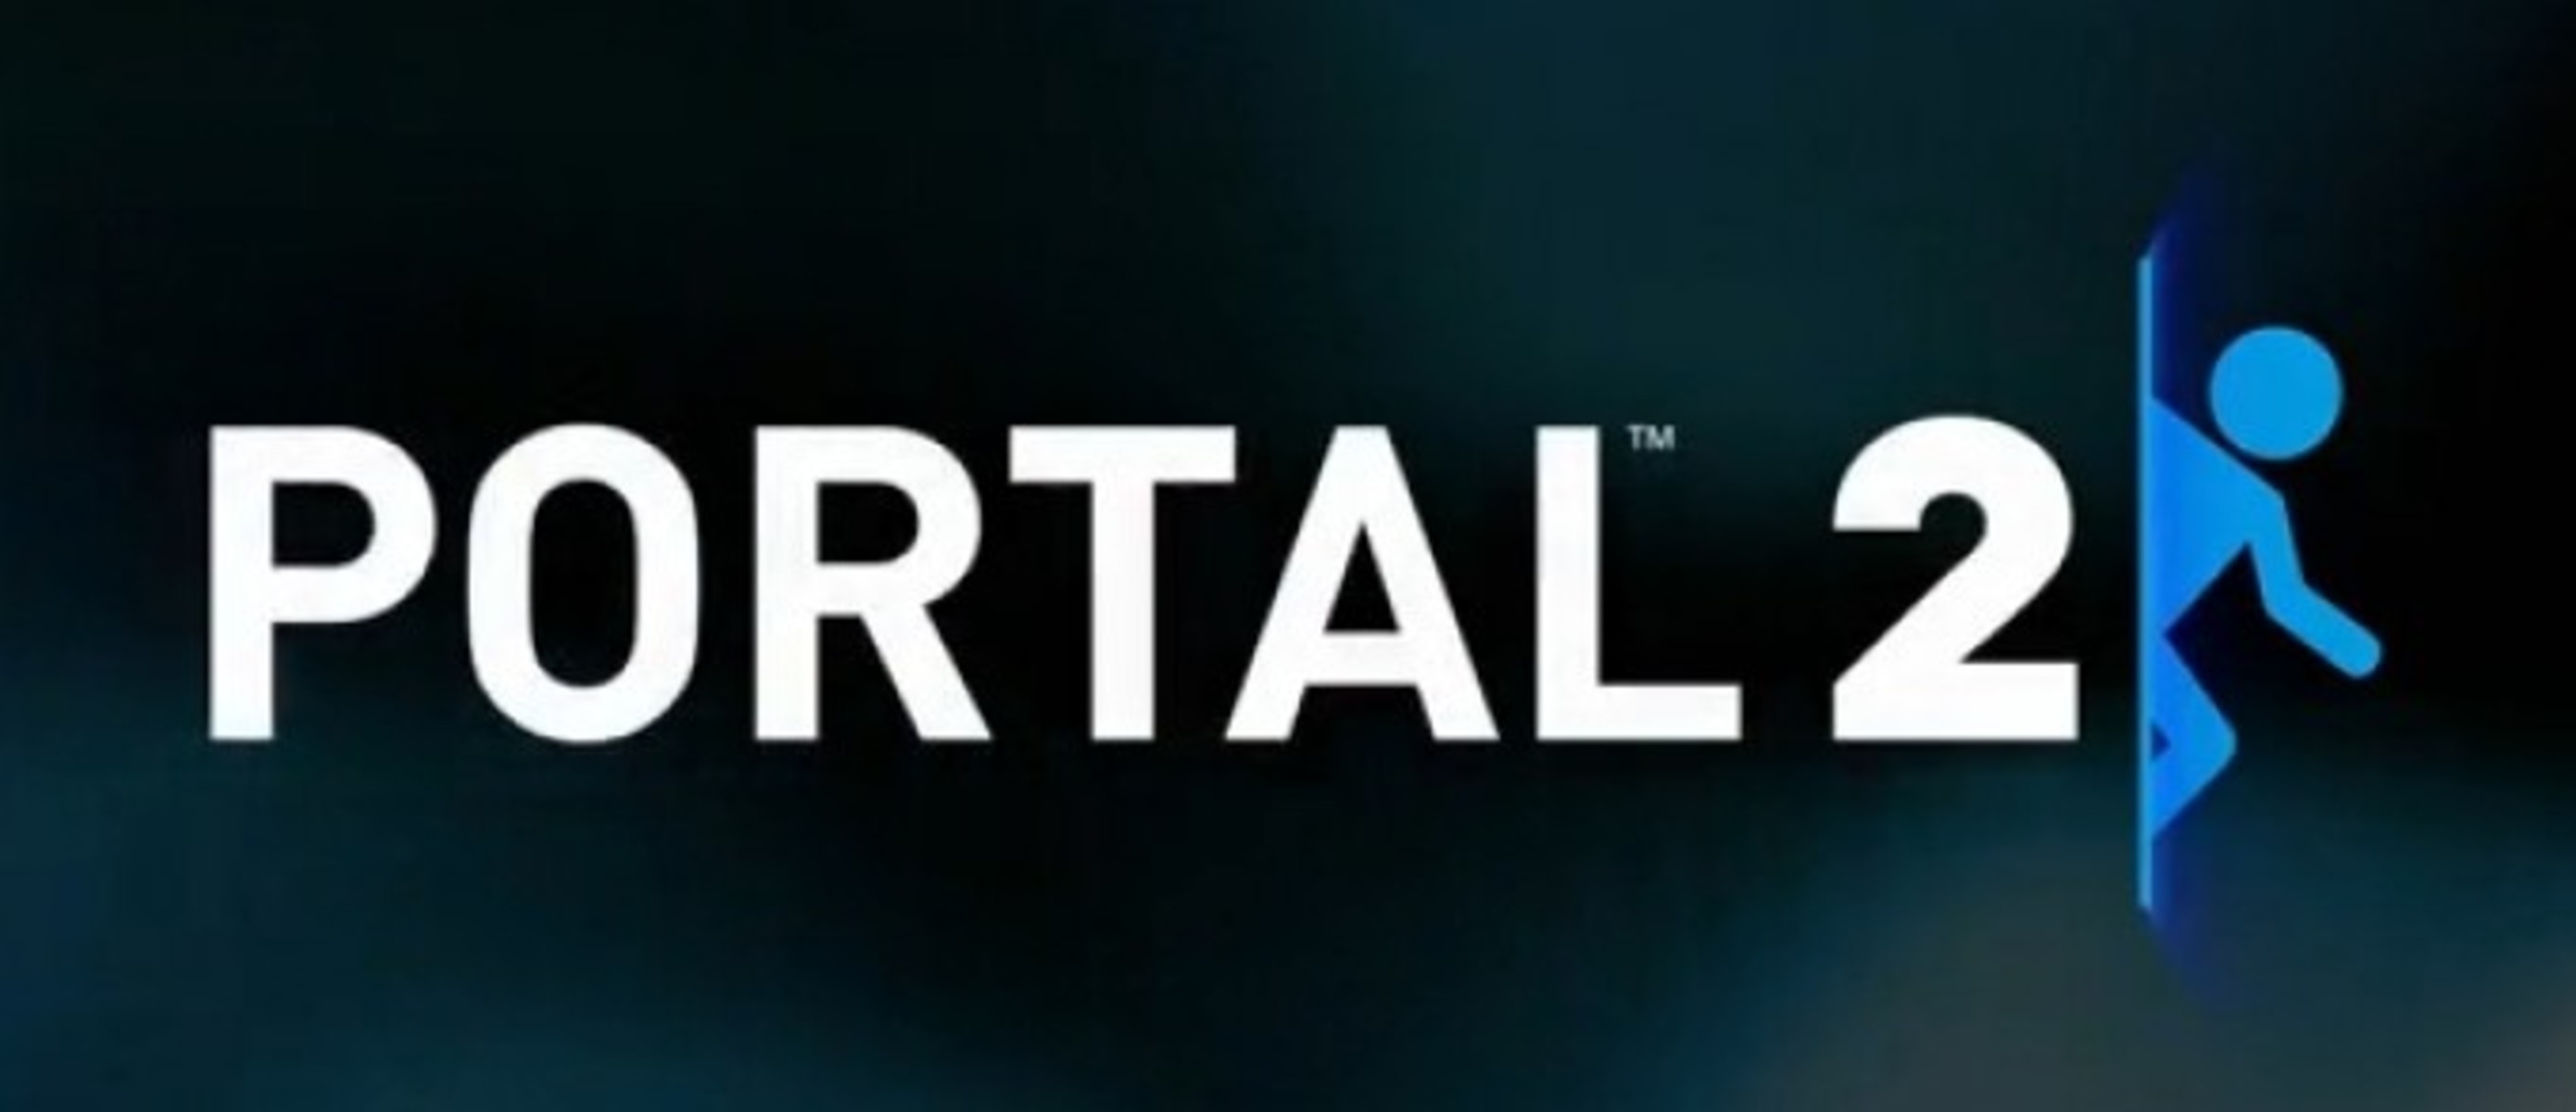 Portal 2 свой сервер фото 107